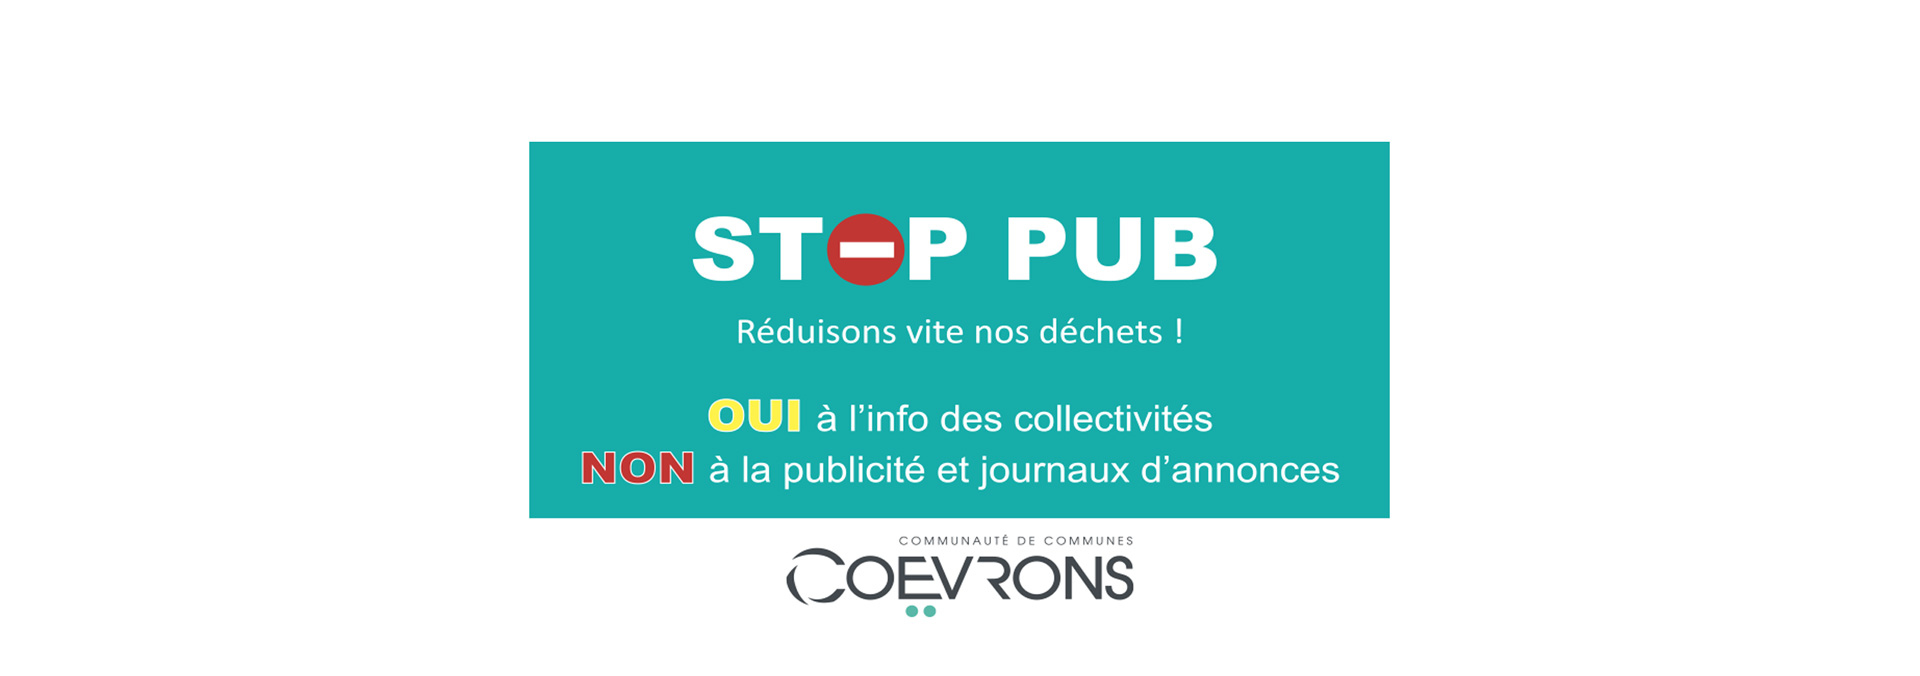 Stop Pub Collectivités – Lettrage Vélo